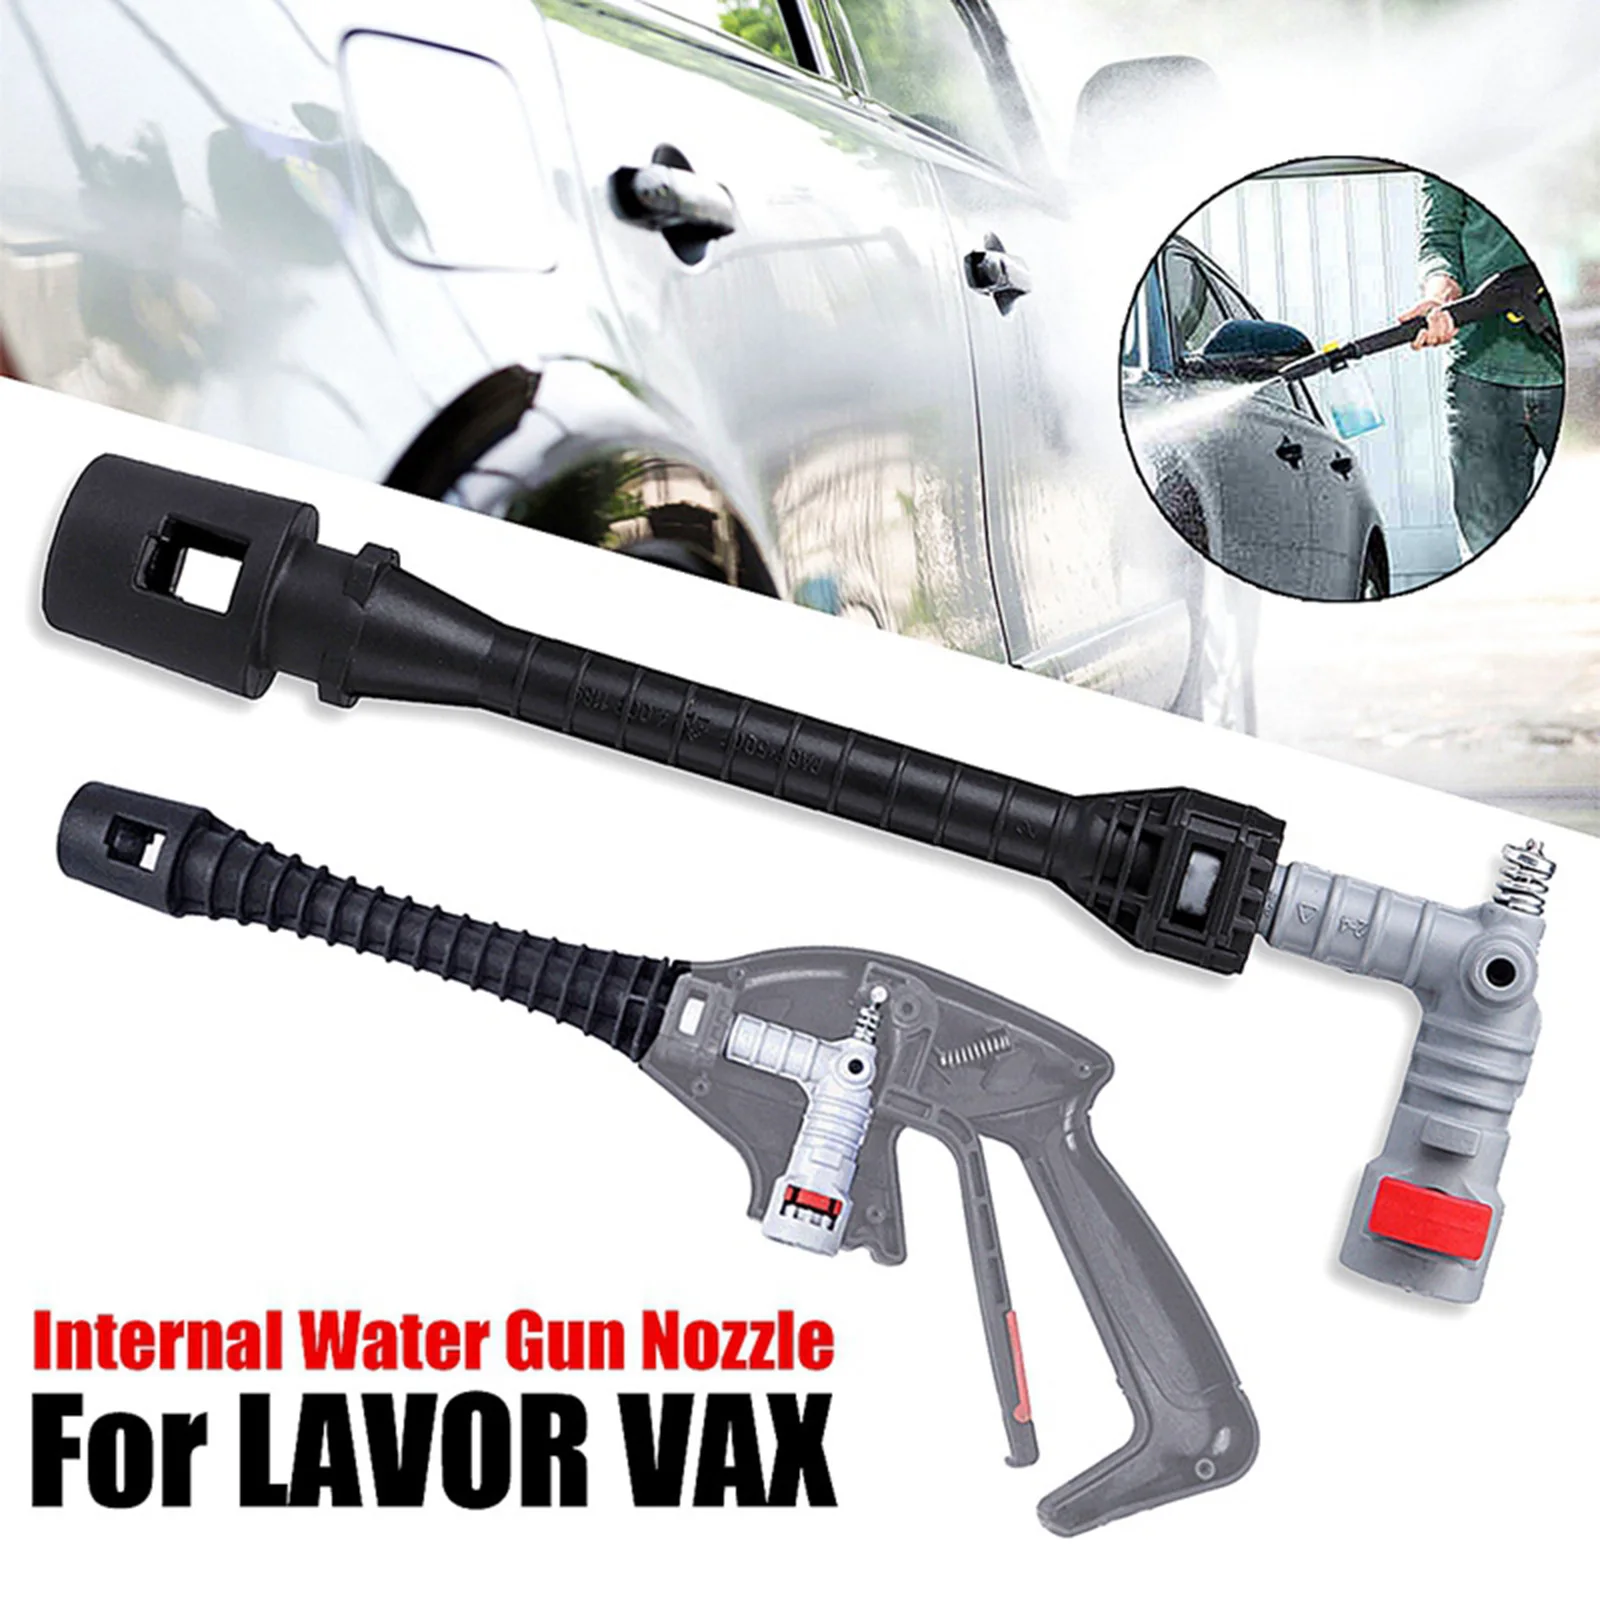 Replacement Pressure Washer Spray Gun Valve High Pressure Water Gun Internal Spare Parts for Lavor Vax Pressure Washer Gun